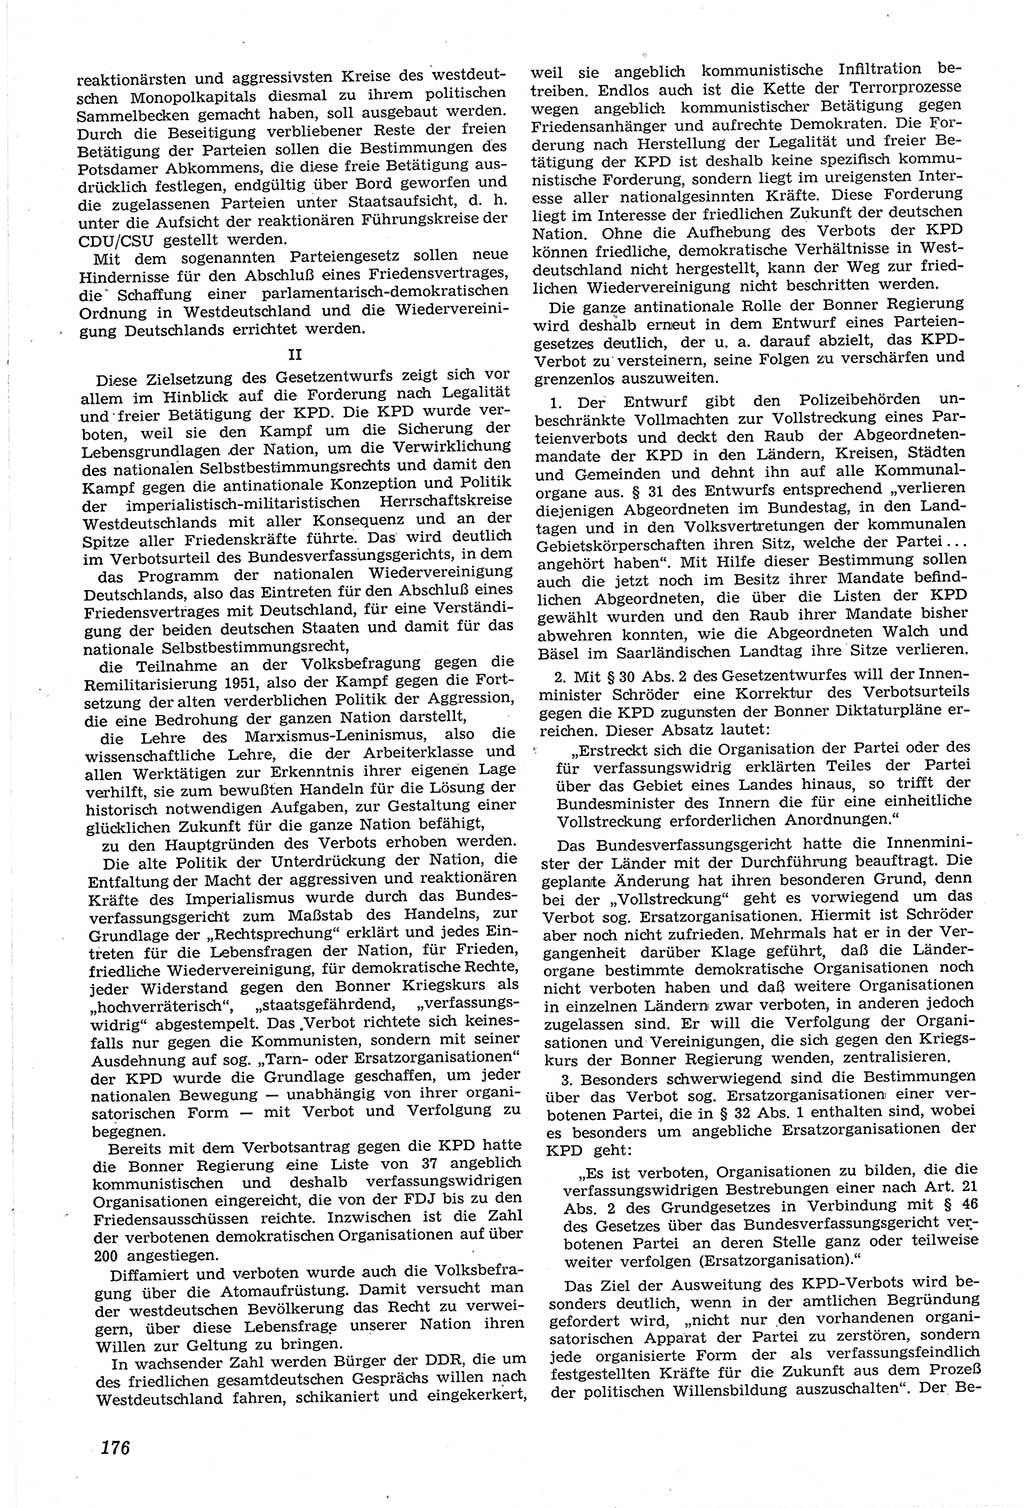 Neue Justiz (NJ), Zeitschrift für Recht und Rechtswissenschaft [Deutsche Demokratische Republik (DDR)], 14. Jahrgang 1960, Seite 176 (NJ DDR 1960, S. 176)